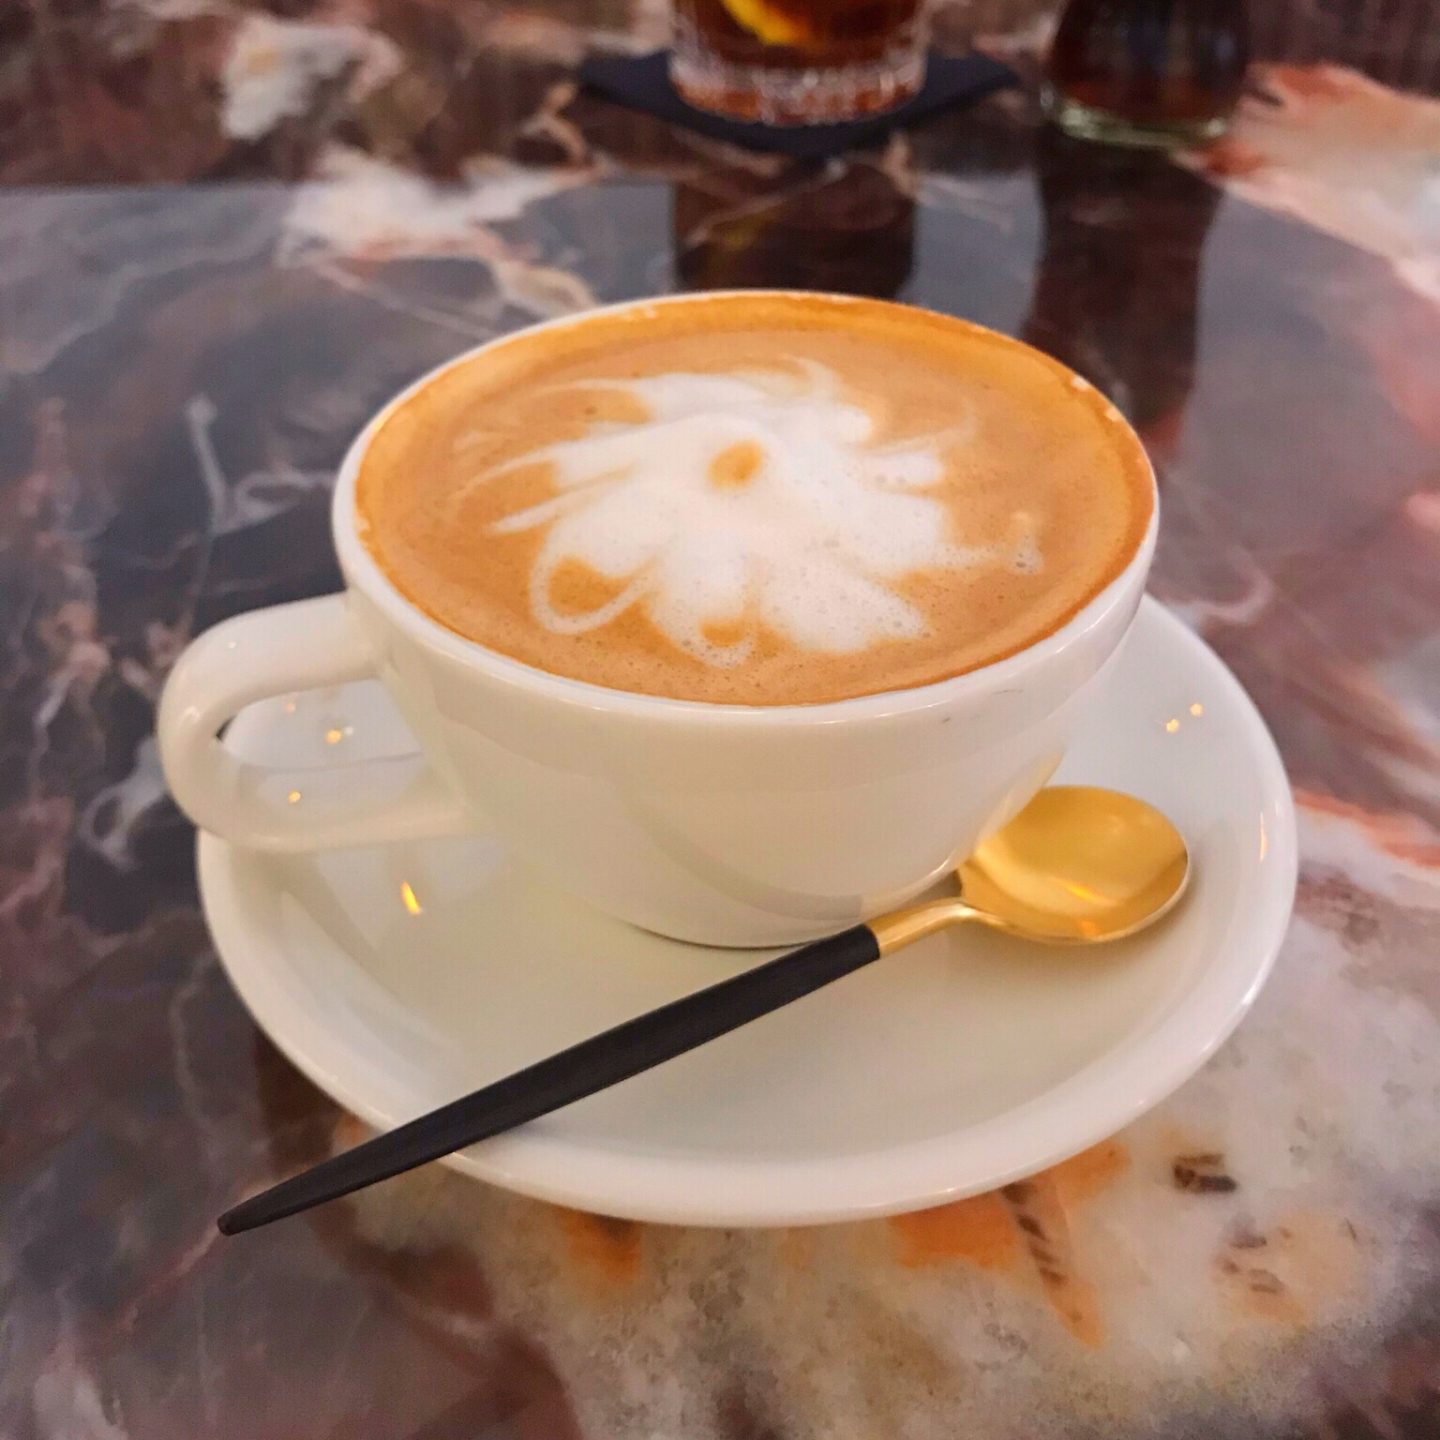 Café in Munich